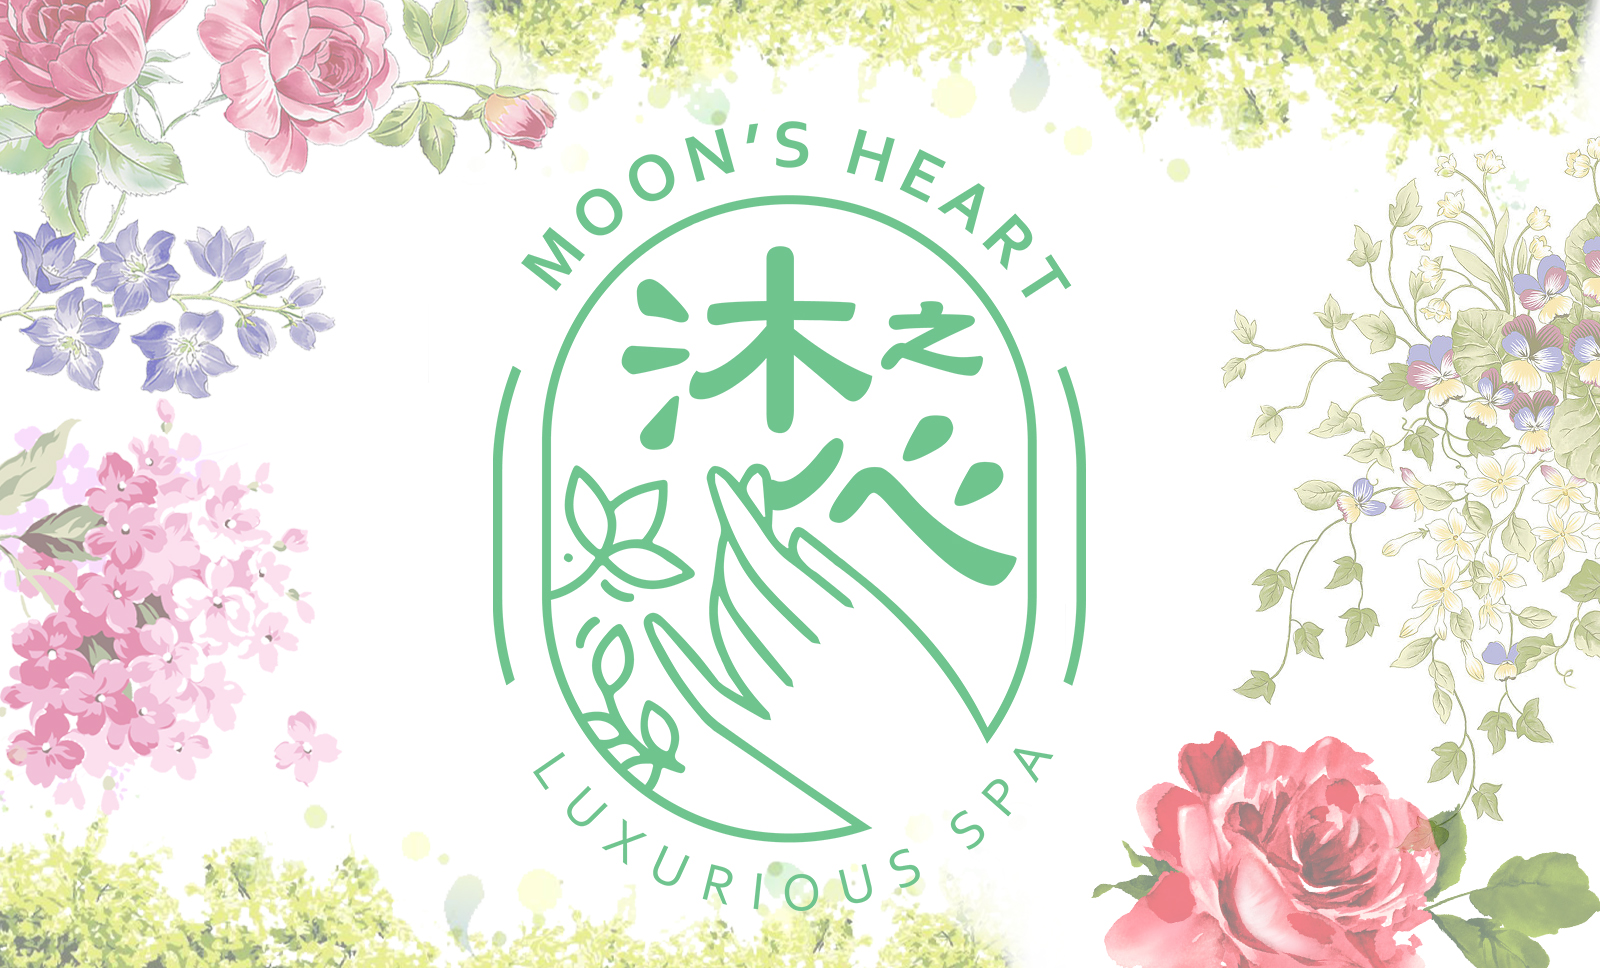 沐之心 Moon’s Heart